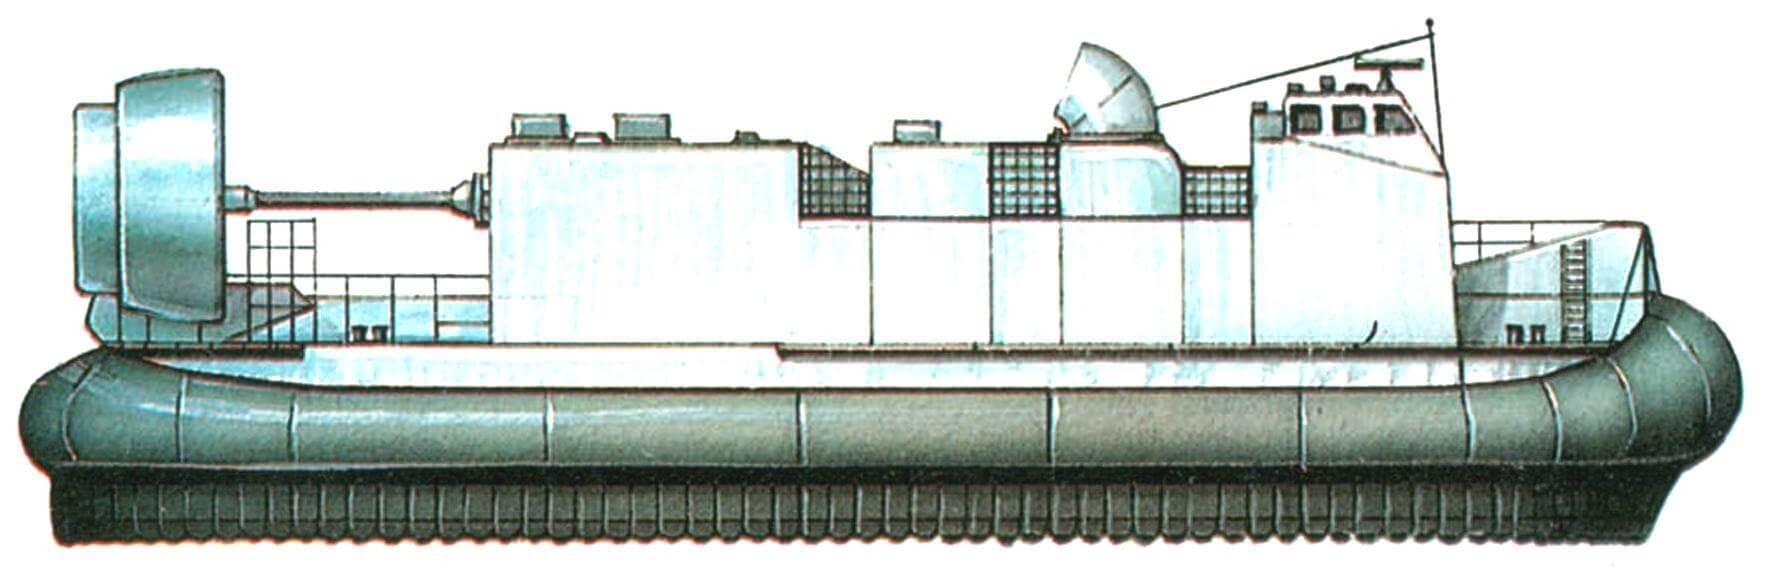 63. Десантный натер на воздушной подушке типа LCAC, США, 1983 г. Водоизмещение стандартное 153,5 т, в грузу 200 т. Длина 26,8 м, ширина 14,3 м, осадка на плаву 0,9 м. Четыре газовые турбины мощностью 12 400 л.с., скорость 40 узлов. Вместимость: 68—75 т груза. Всего в 1983—1994 годах построена 91 единица.